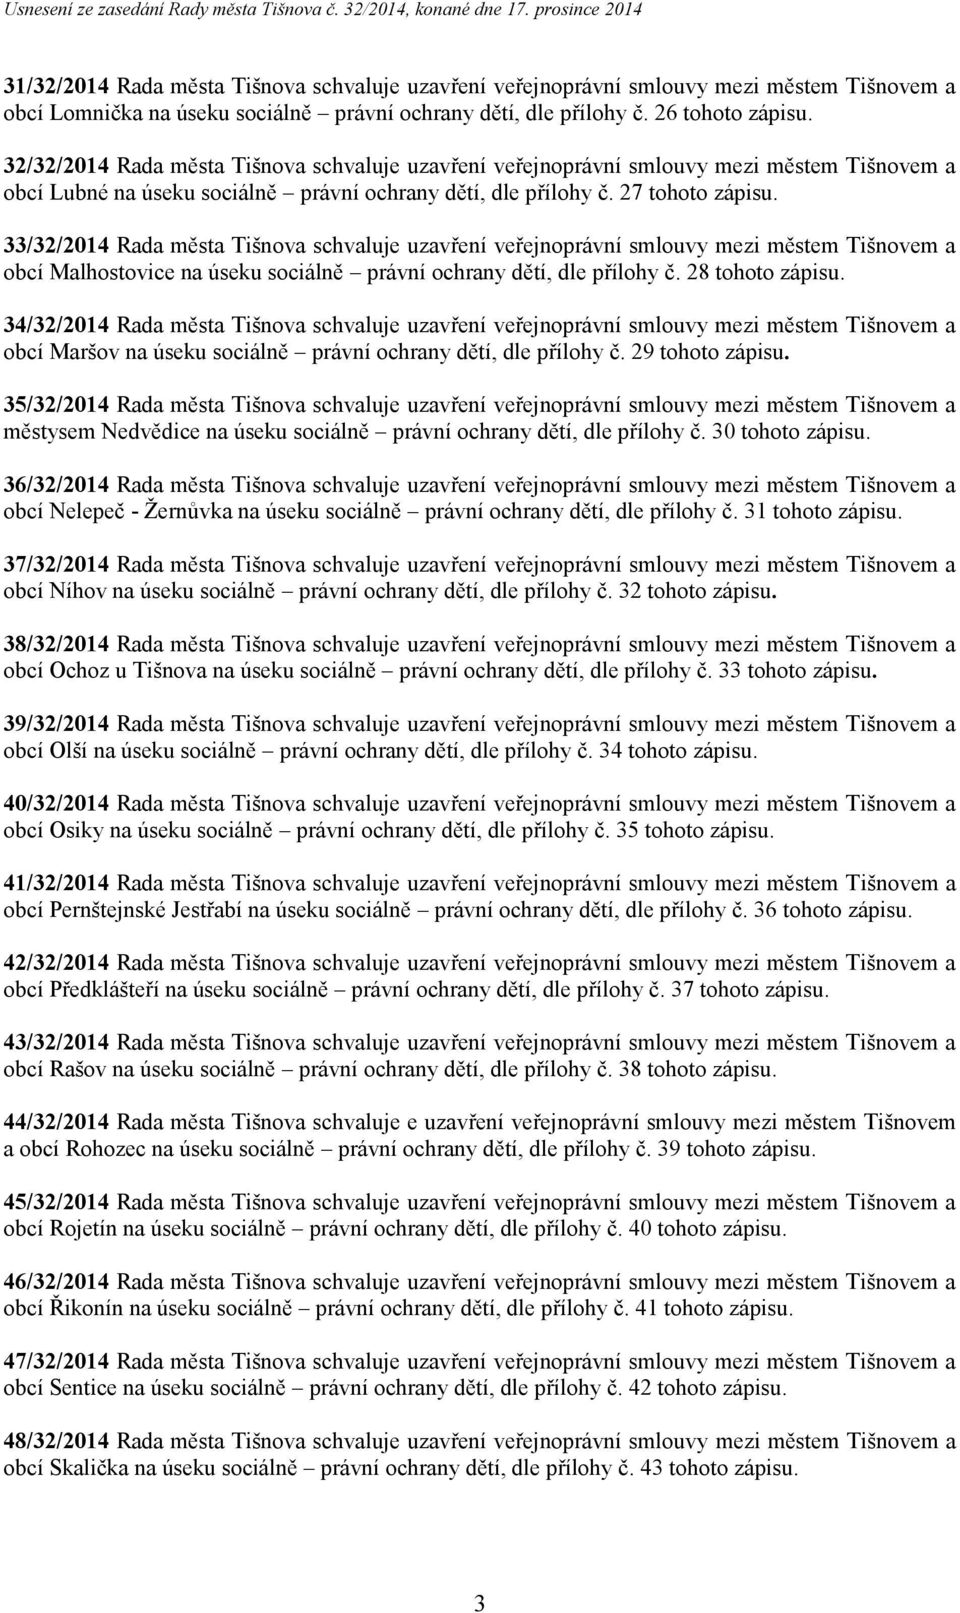 33/32/2014 Rada města Tišnova schvaluje uzavření veřejnoprávní smlouvy mezi městem Tišnovem a obcí Malhostovice na úseku sociálně právní ochrany dětí, dle přílohy č. 28 tohoto zápisu.